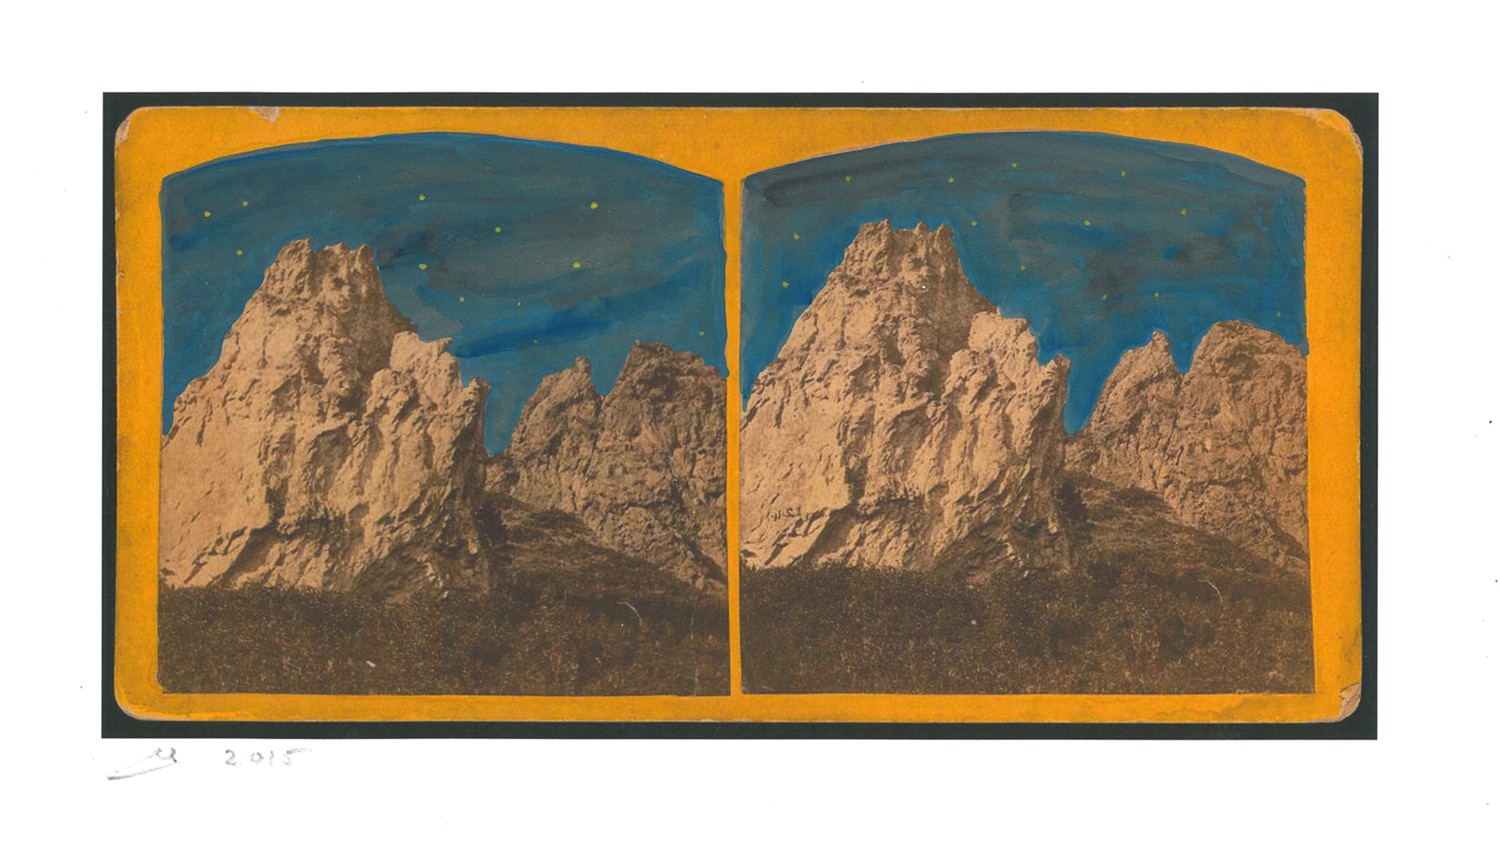 תום פניני, Double Star D, 2015, צבעי מים על נייר צבעי מים מודפס, 26.5X40.5 סמ